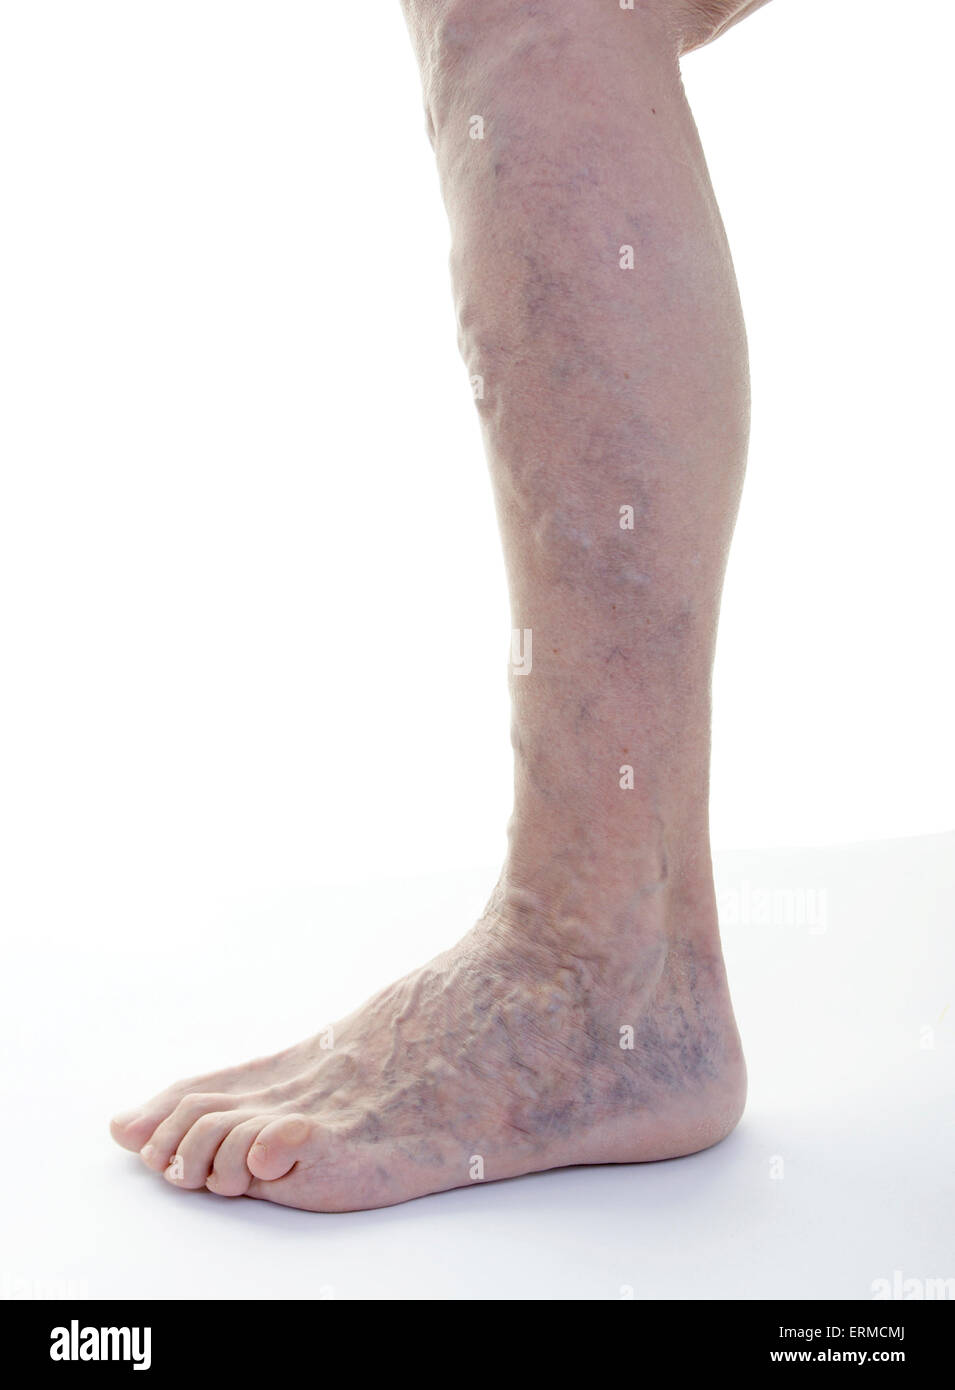 Vene varicose gamba (femmine, età 68 anni) / Krampfadern Varizen am Bein (Frau, Alter 68 Jahre) Foto Stock